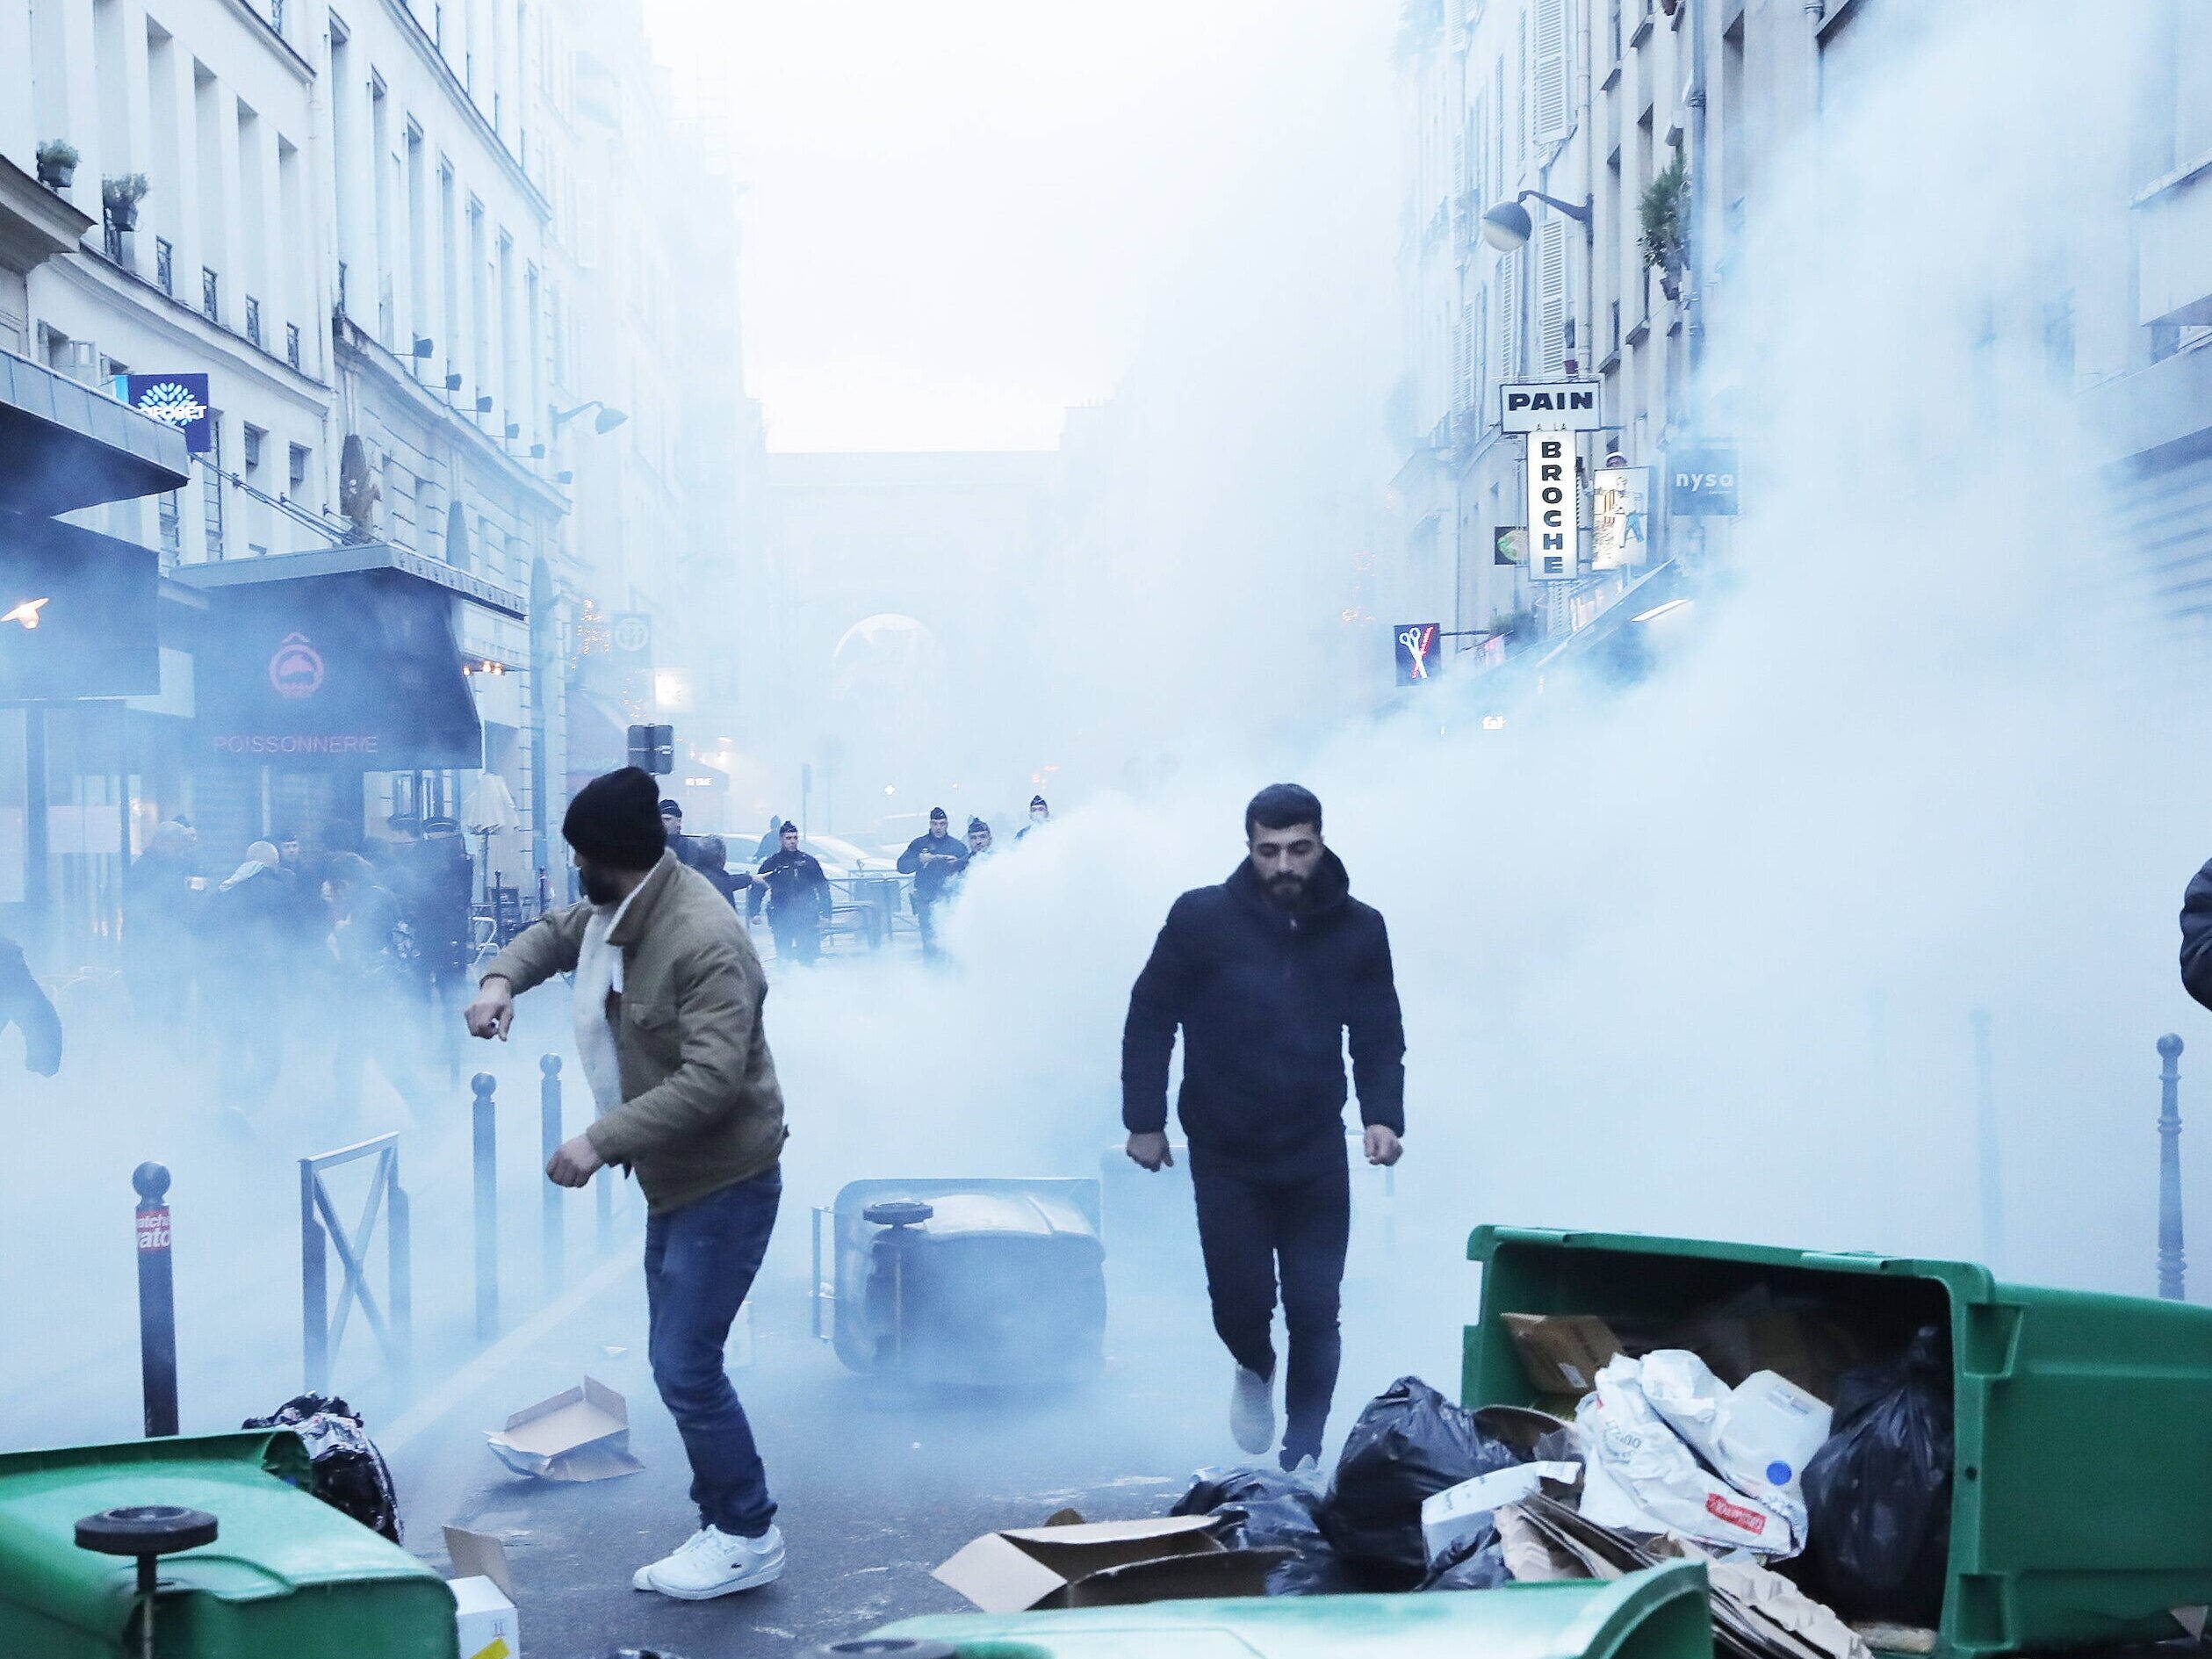 Émeutes après une fusillade dans le centre de Paris